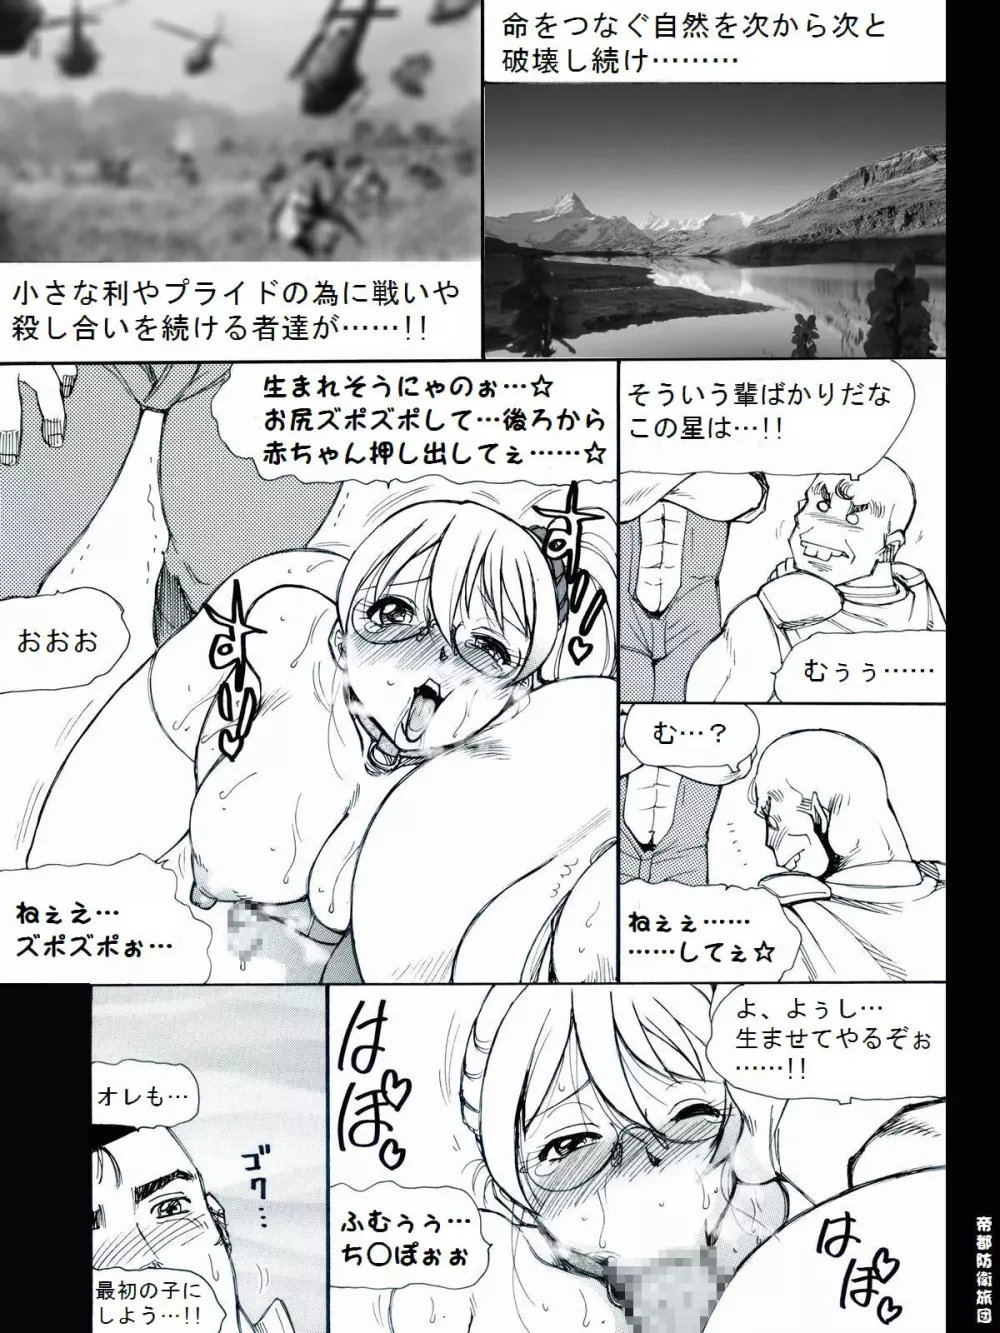 [帝都防衛旅団] RTKBOOK 9-3 「M○Xいぢり(3) 『PANPAN-MAN』」 19ページ